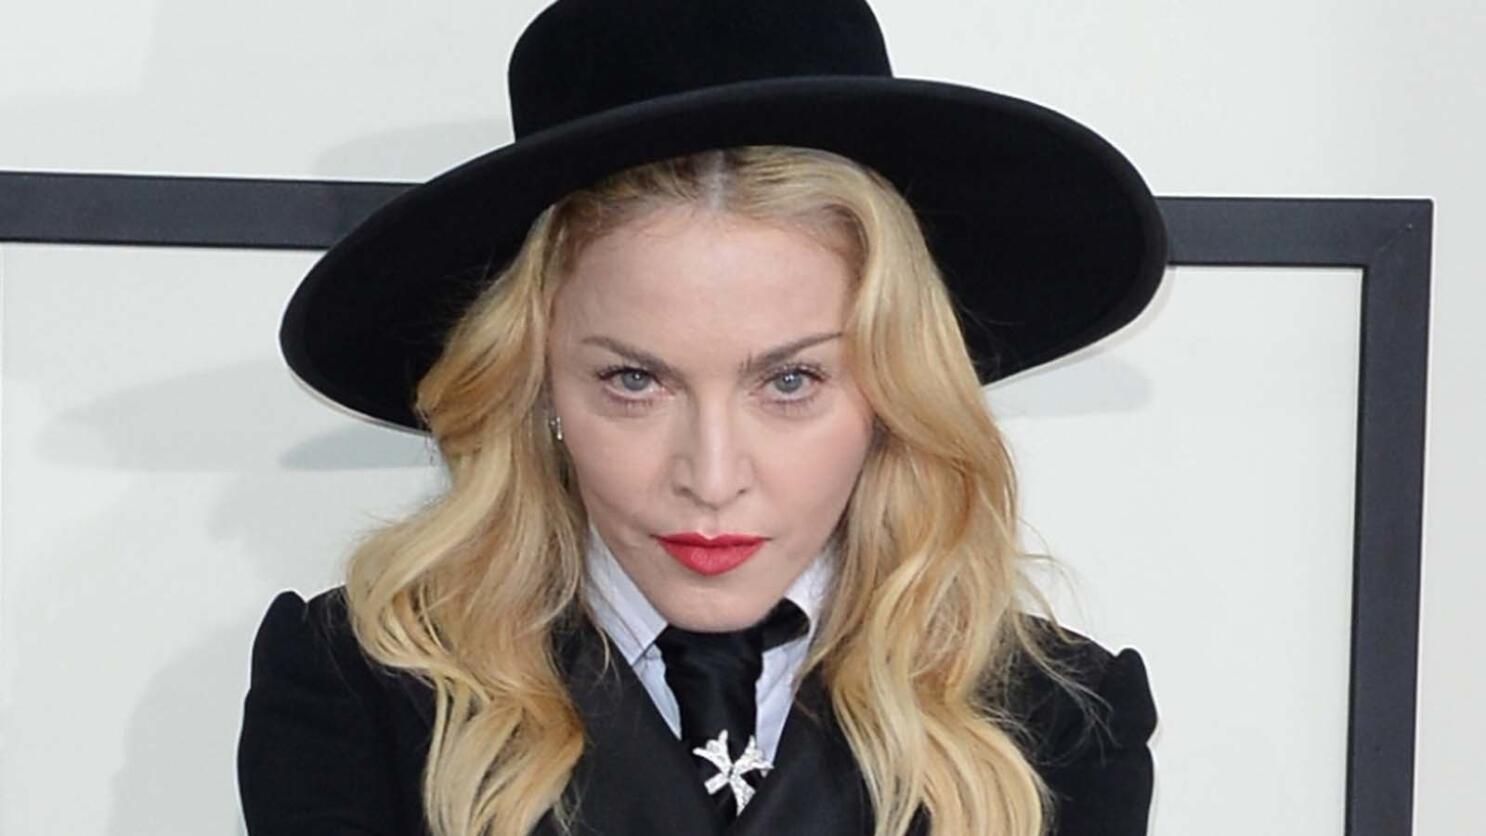 Madonna - Madonna (cd) : Target